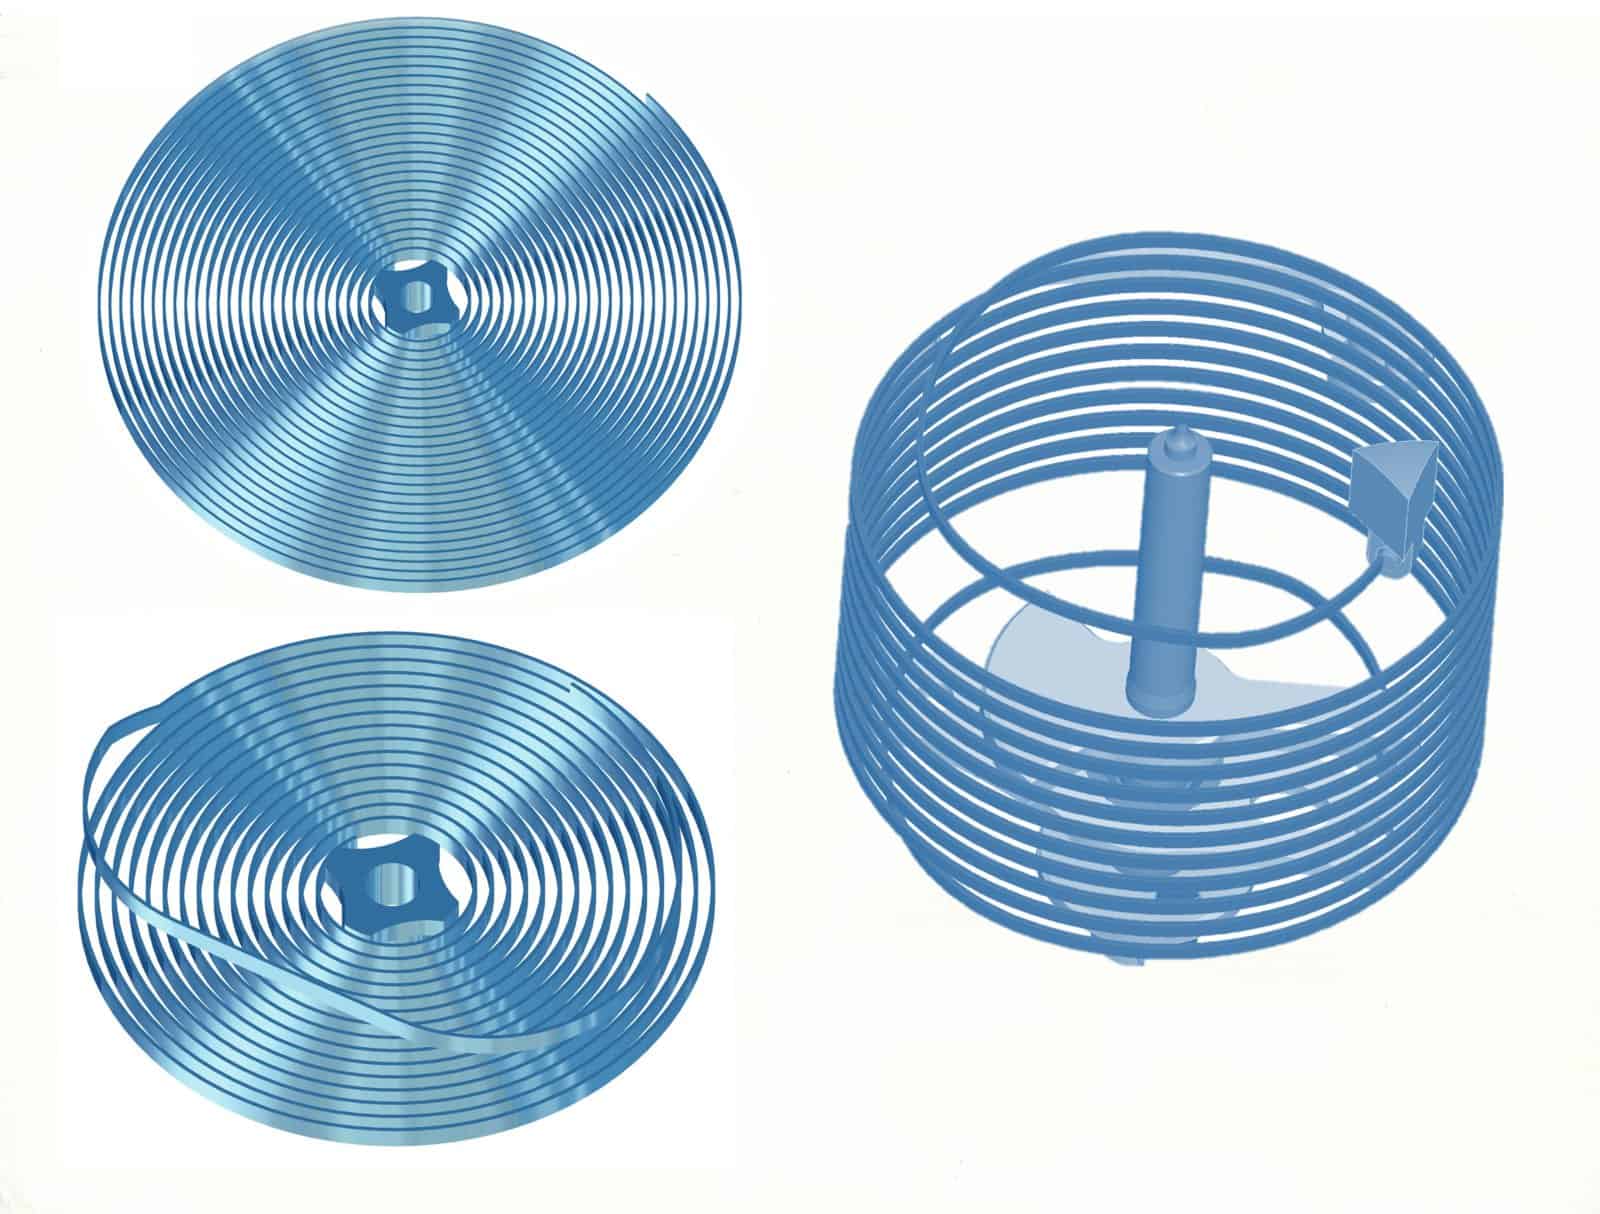 Im Vergleich: Flachspirale - Breguetspirale - Turmspirale 